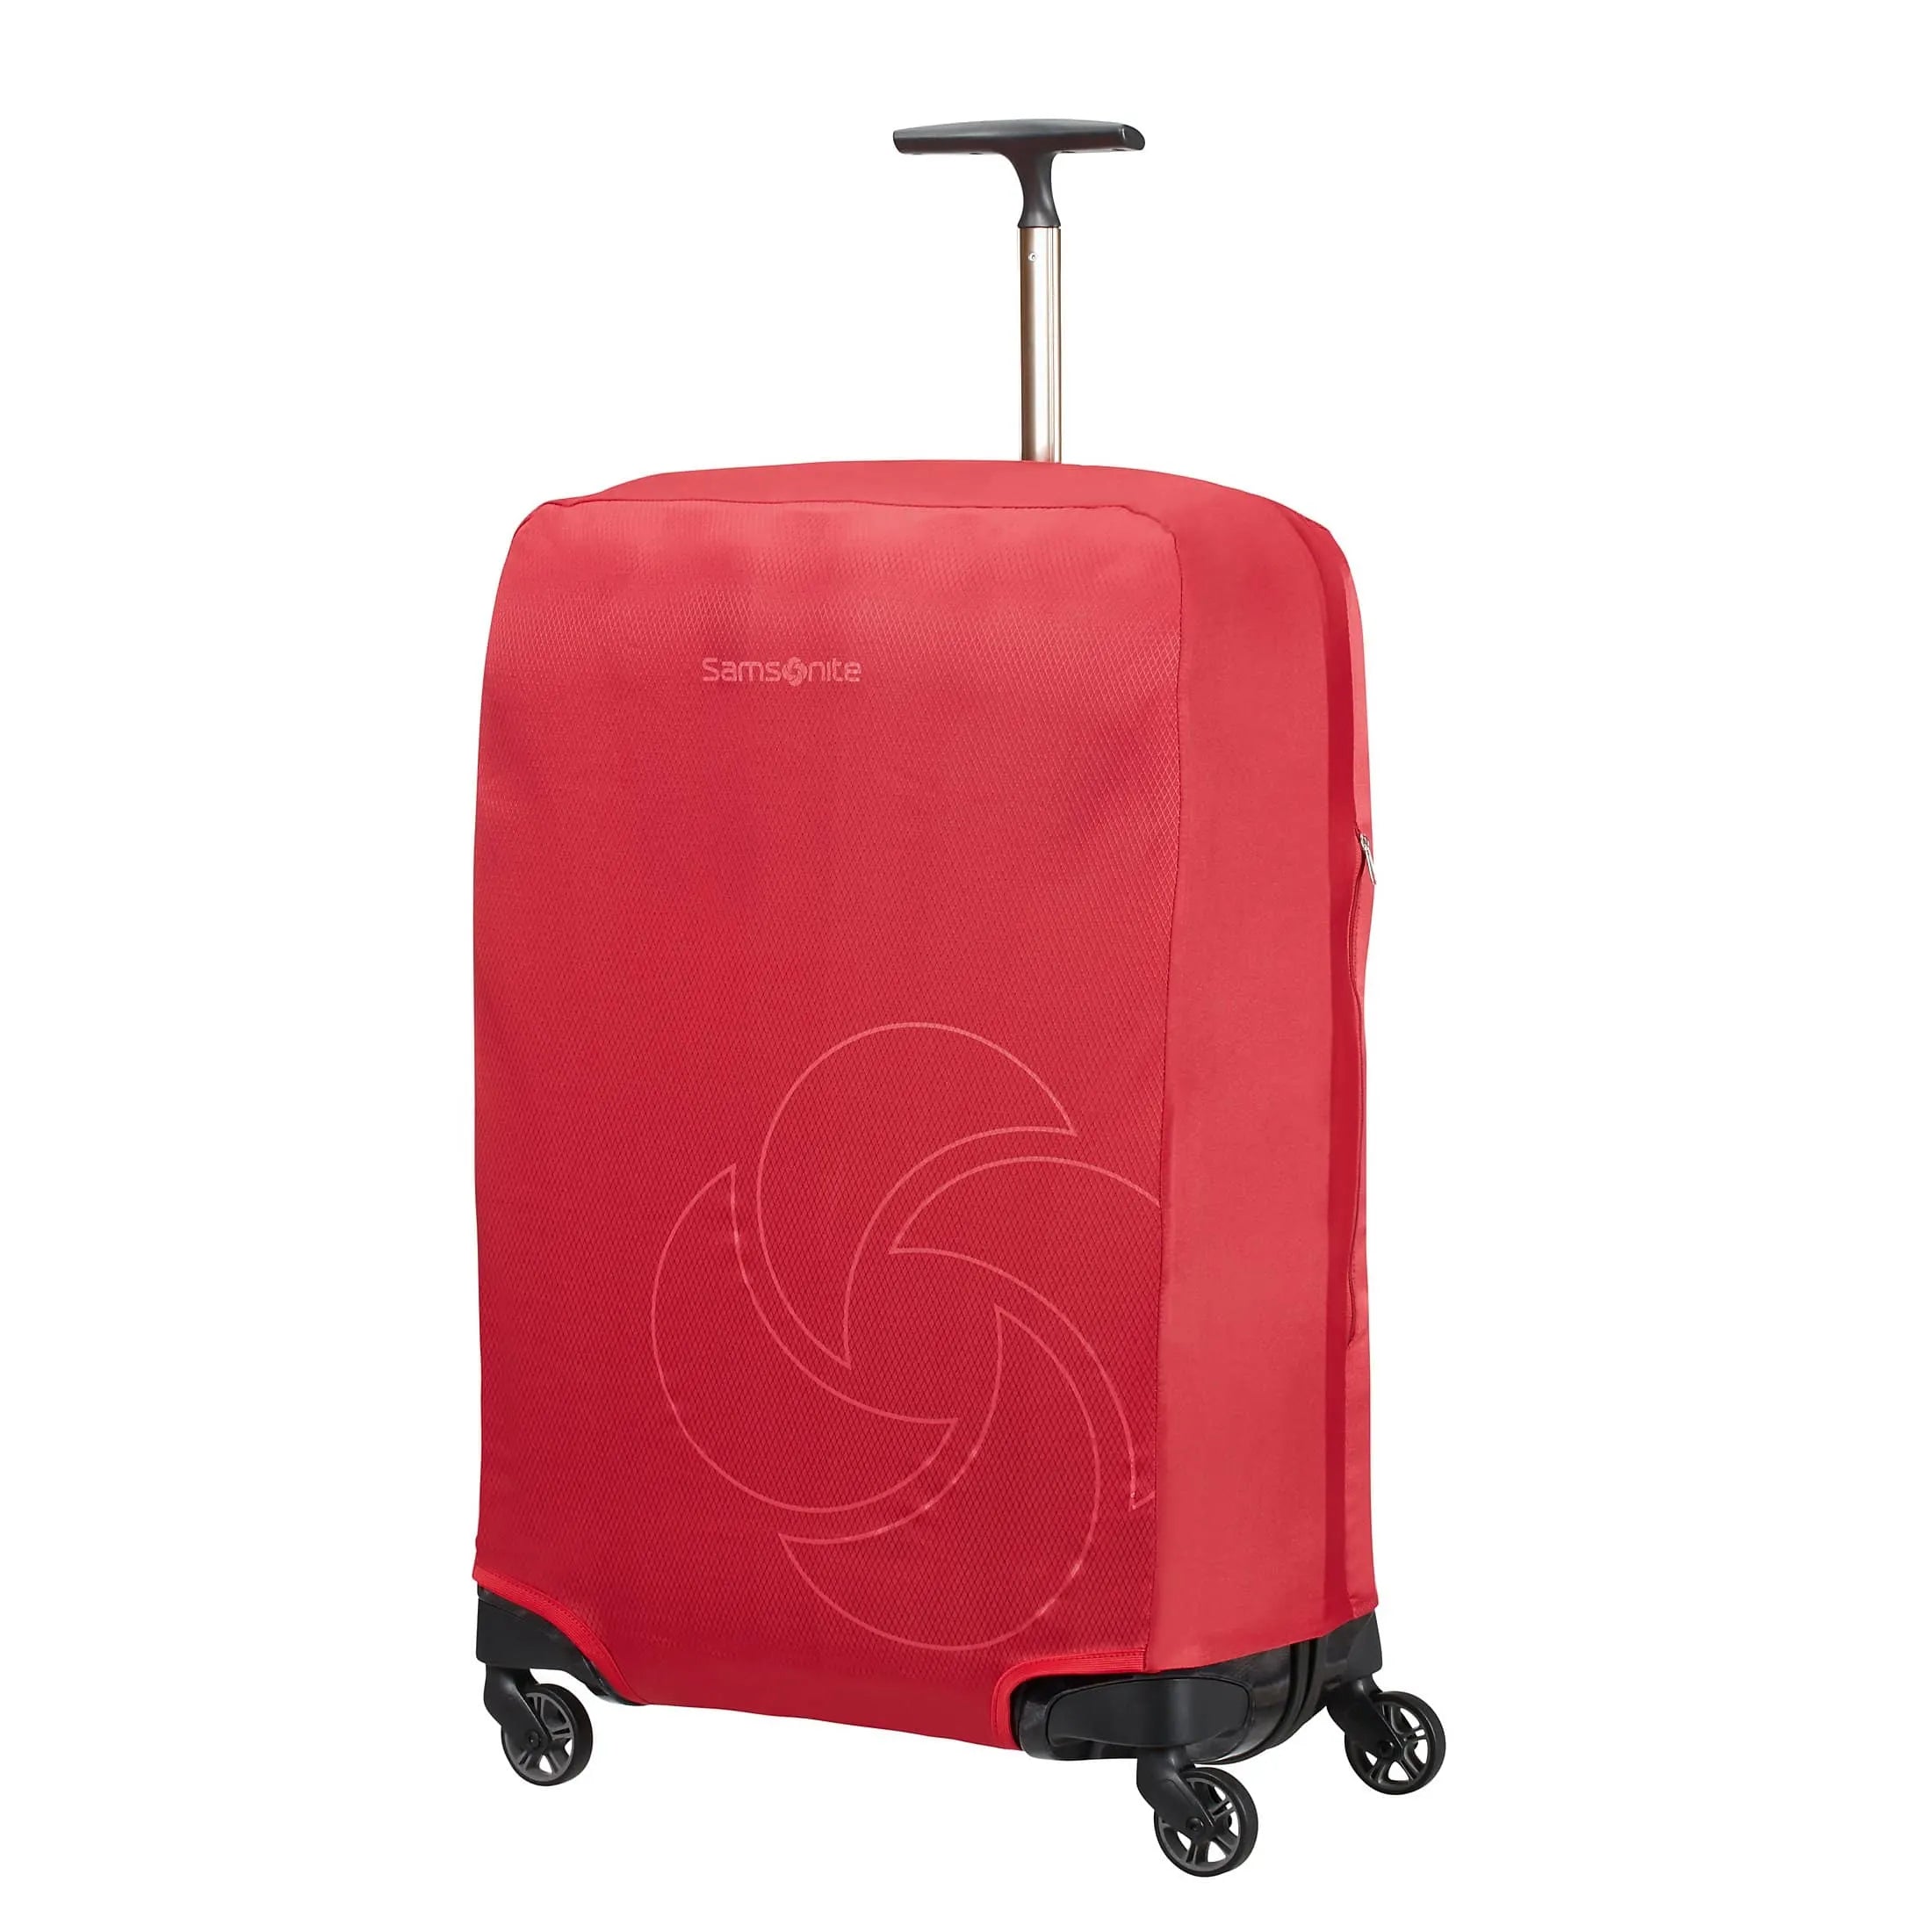 Samsonite Travel Accessories suitcase cover M 69 cm - red